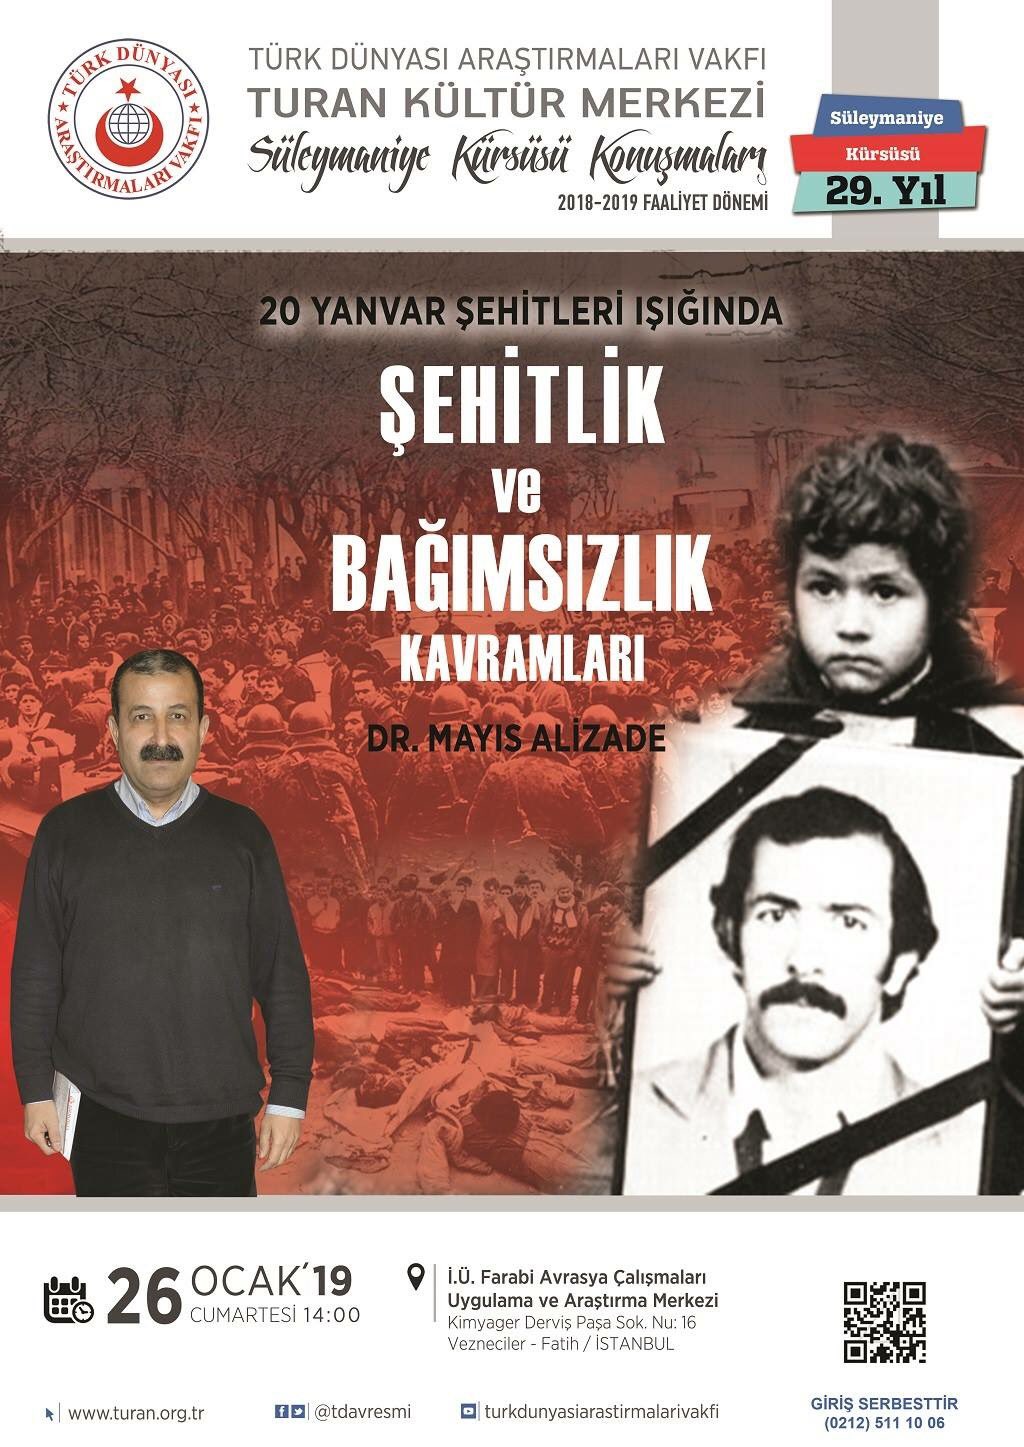 "20 Yanvar Şehitleri Işığında, Şehitlik ve Bağımsızlık Kavramları" konulu konferans